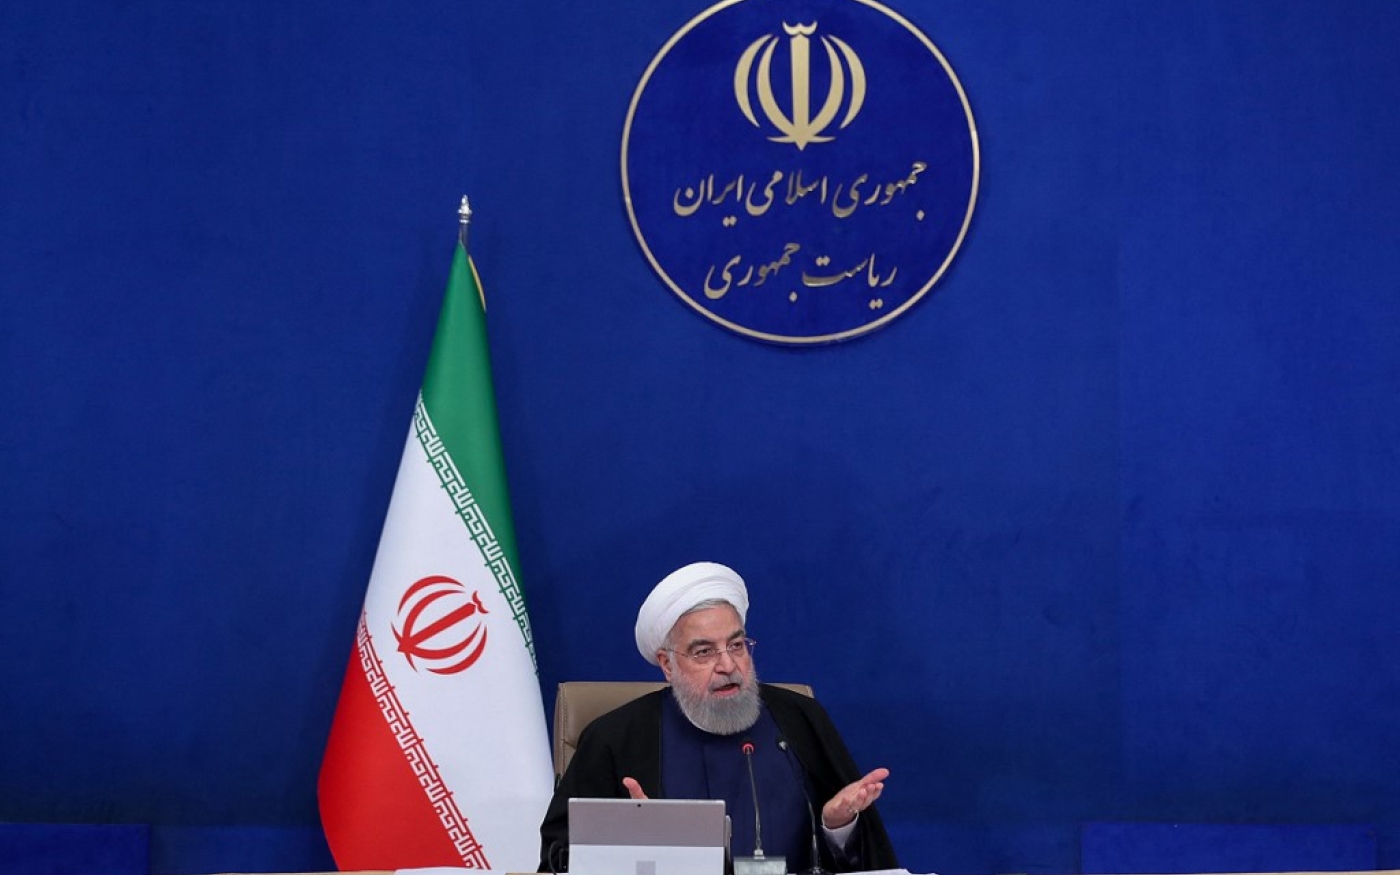 Le président iranien Hassan Rohani s’exprime à Téhéran, le 7 avril 2021 (présidence iranienne/AFP)